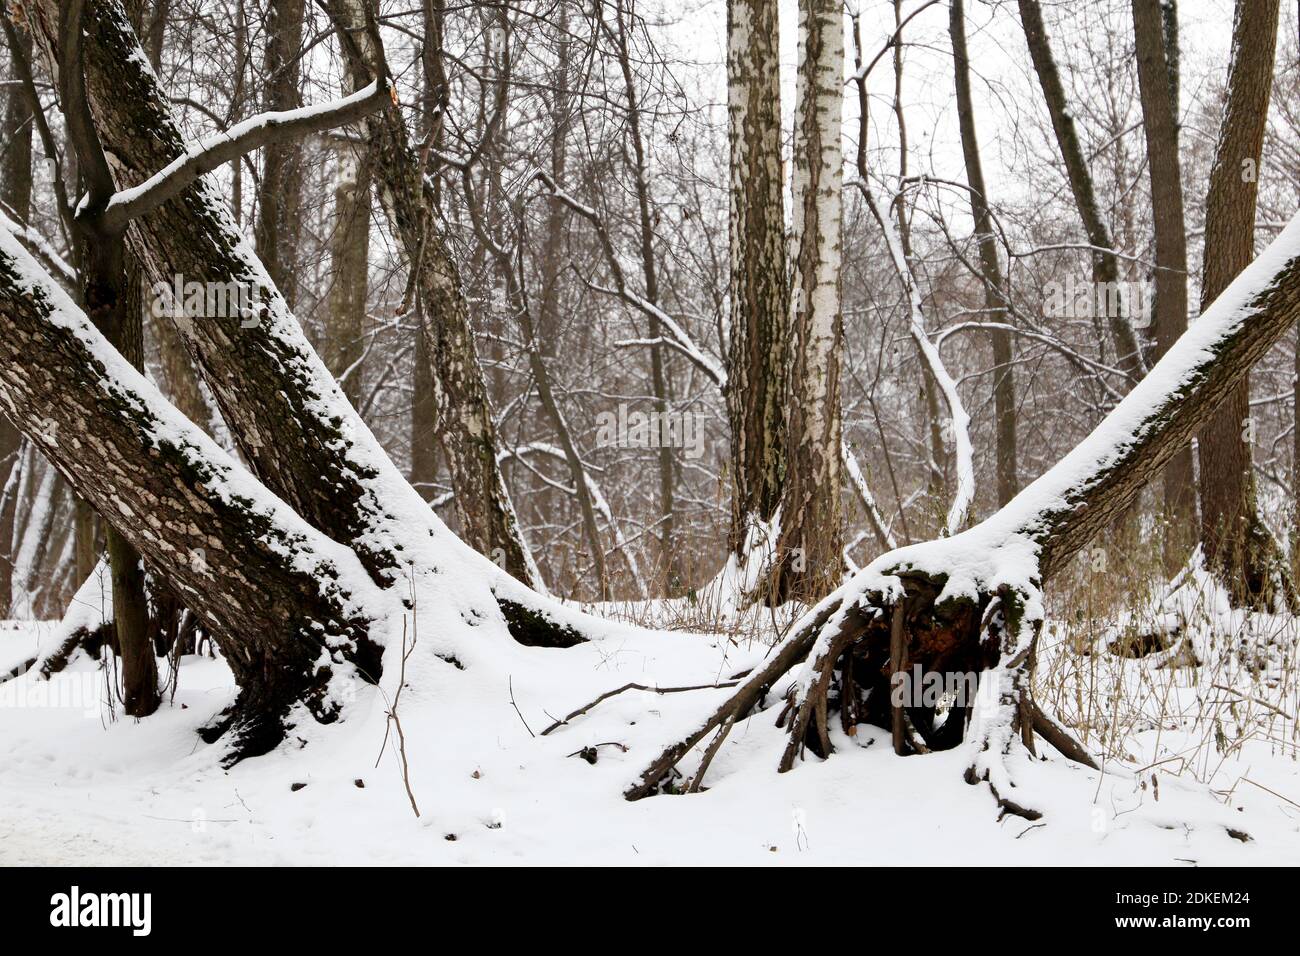 Forêt d'hiver, neige couverte arbres tombés avec de grandes racines, vue pittoresque. La nature après les chutes de neige, temps froid Banque D'Images